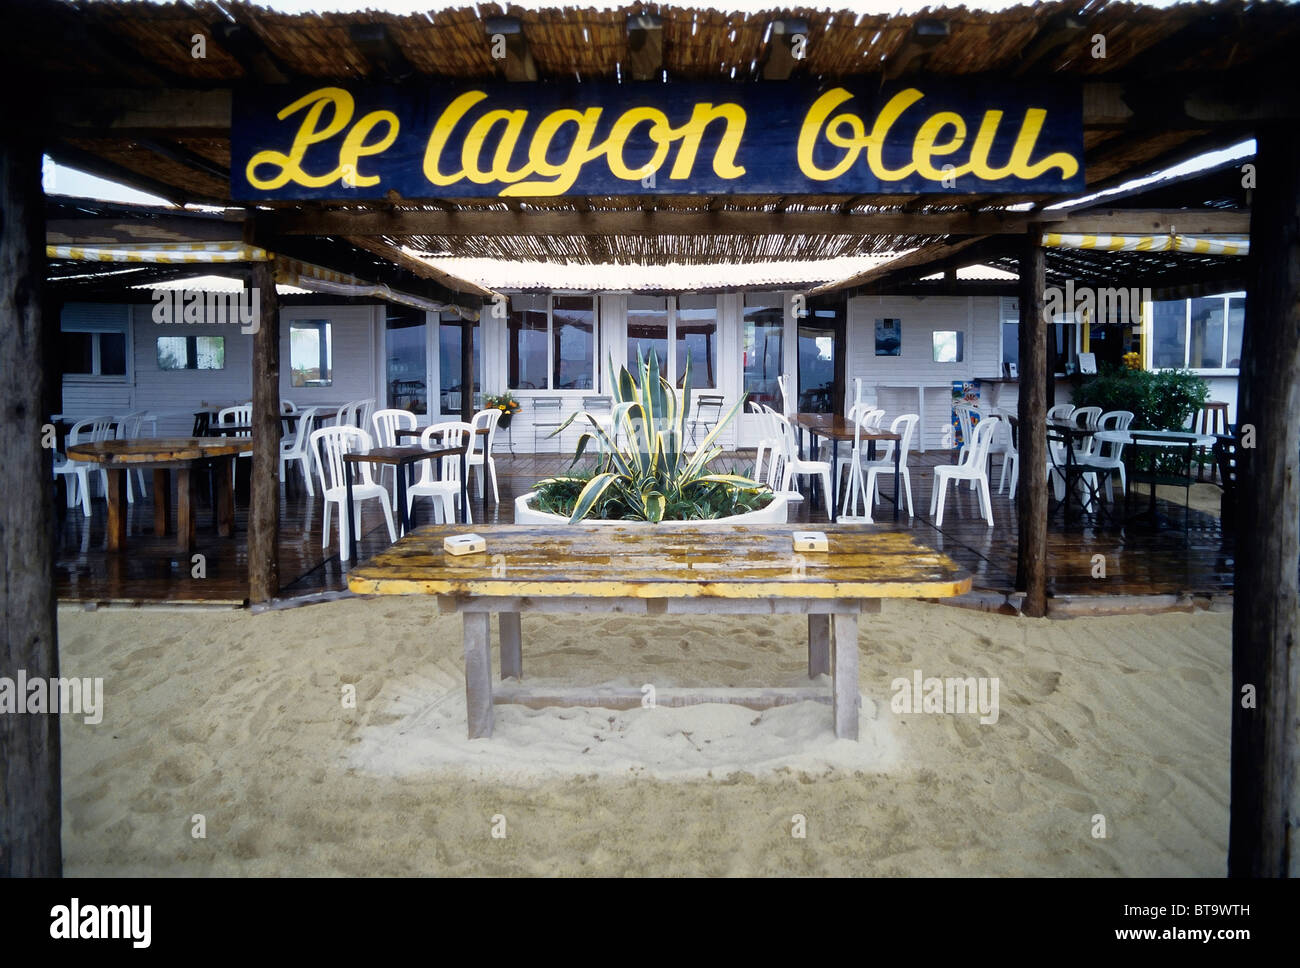 Beach pavilion, Le lagon bleu, deserted, at the famous beach club, Tahiti Plage, Saint-Tropez, Côte d'Azur, Var, Southern France Stock Photo